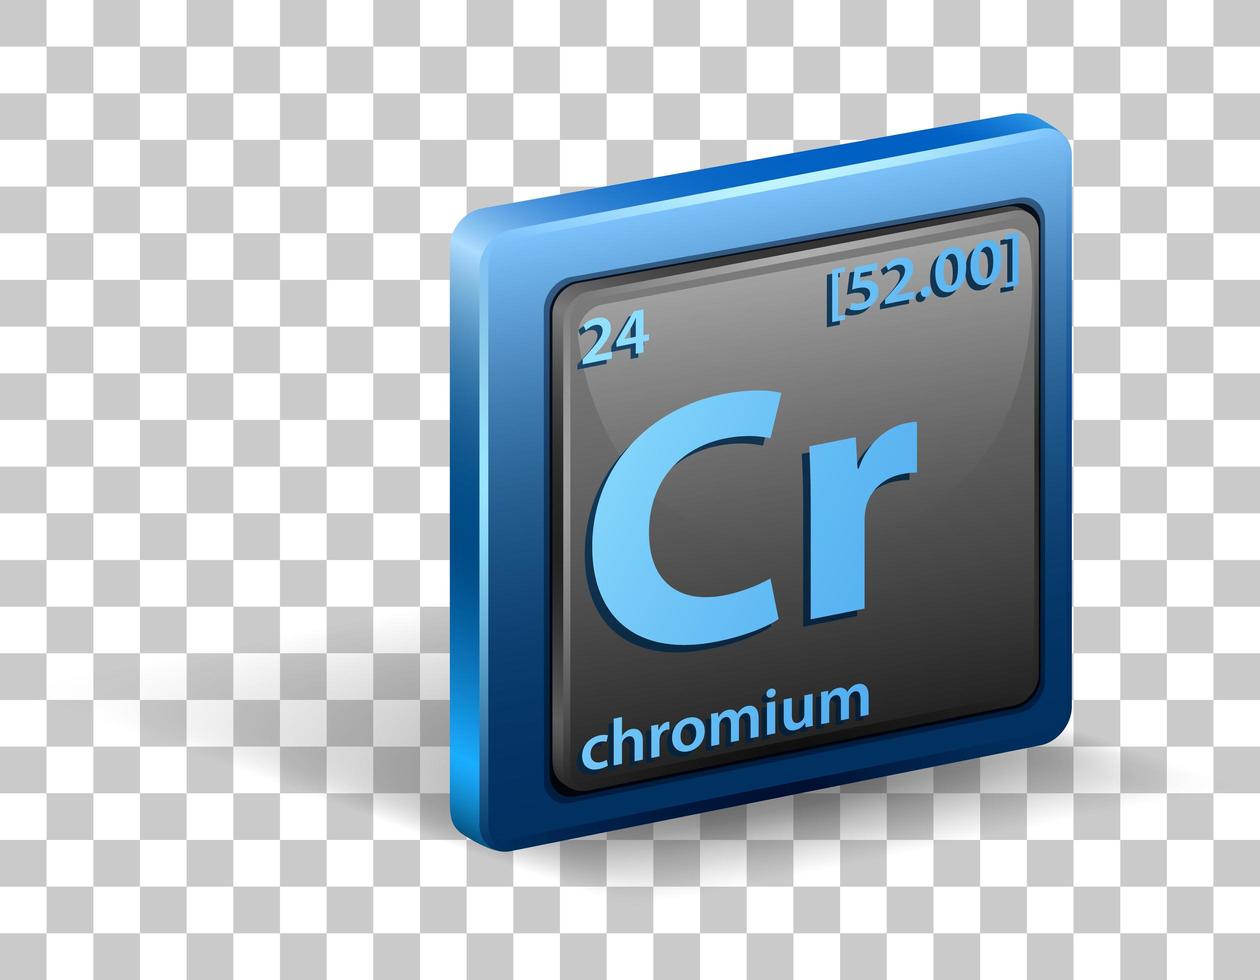 élément chimique de chrome. symbole chimique avec numéro atomique et masse atomique. vecteur